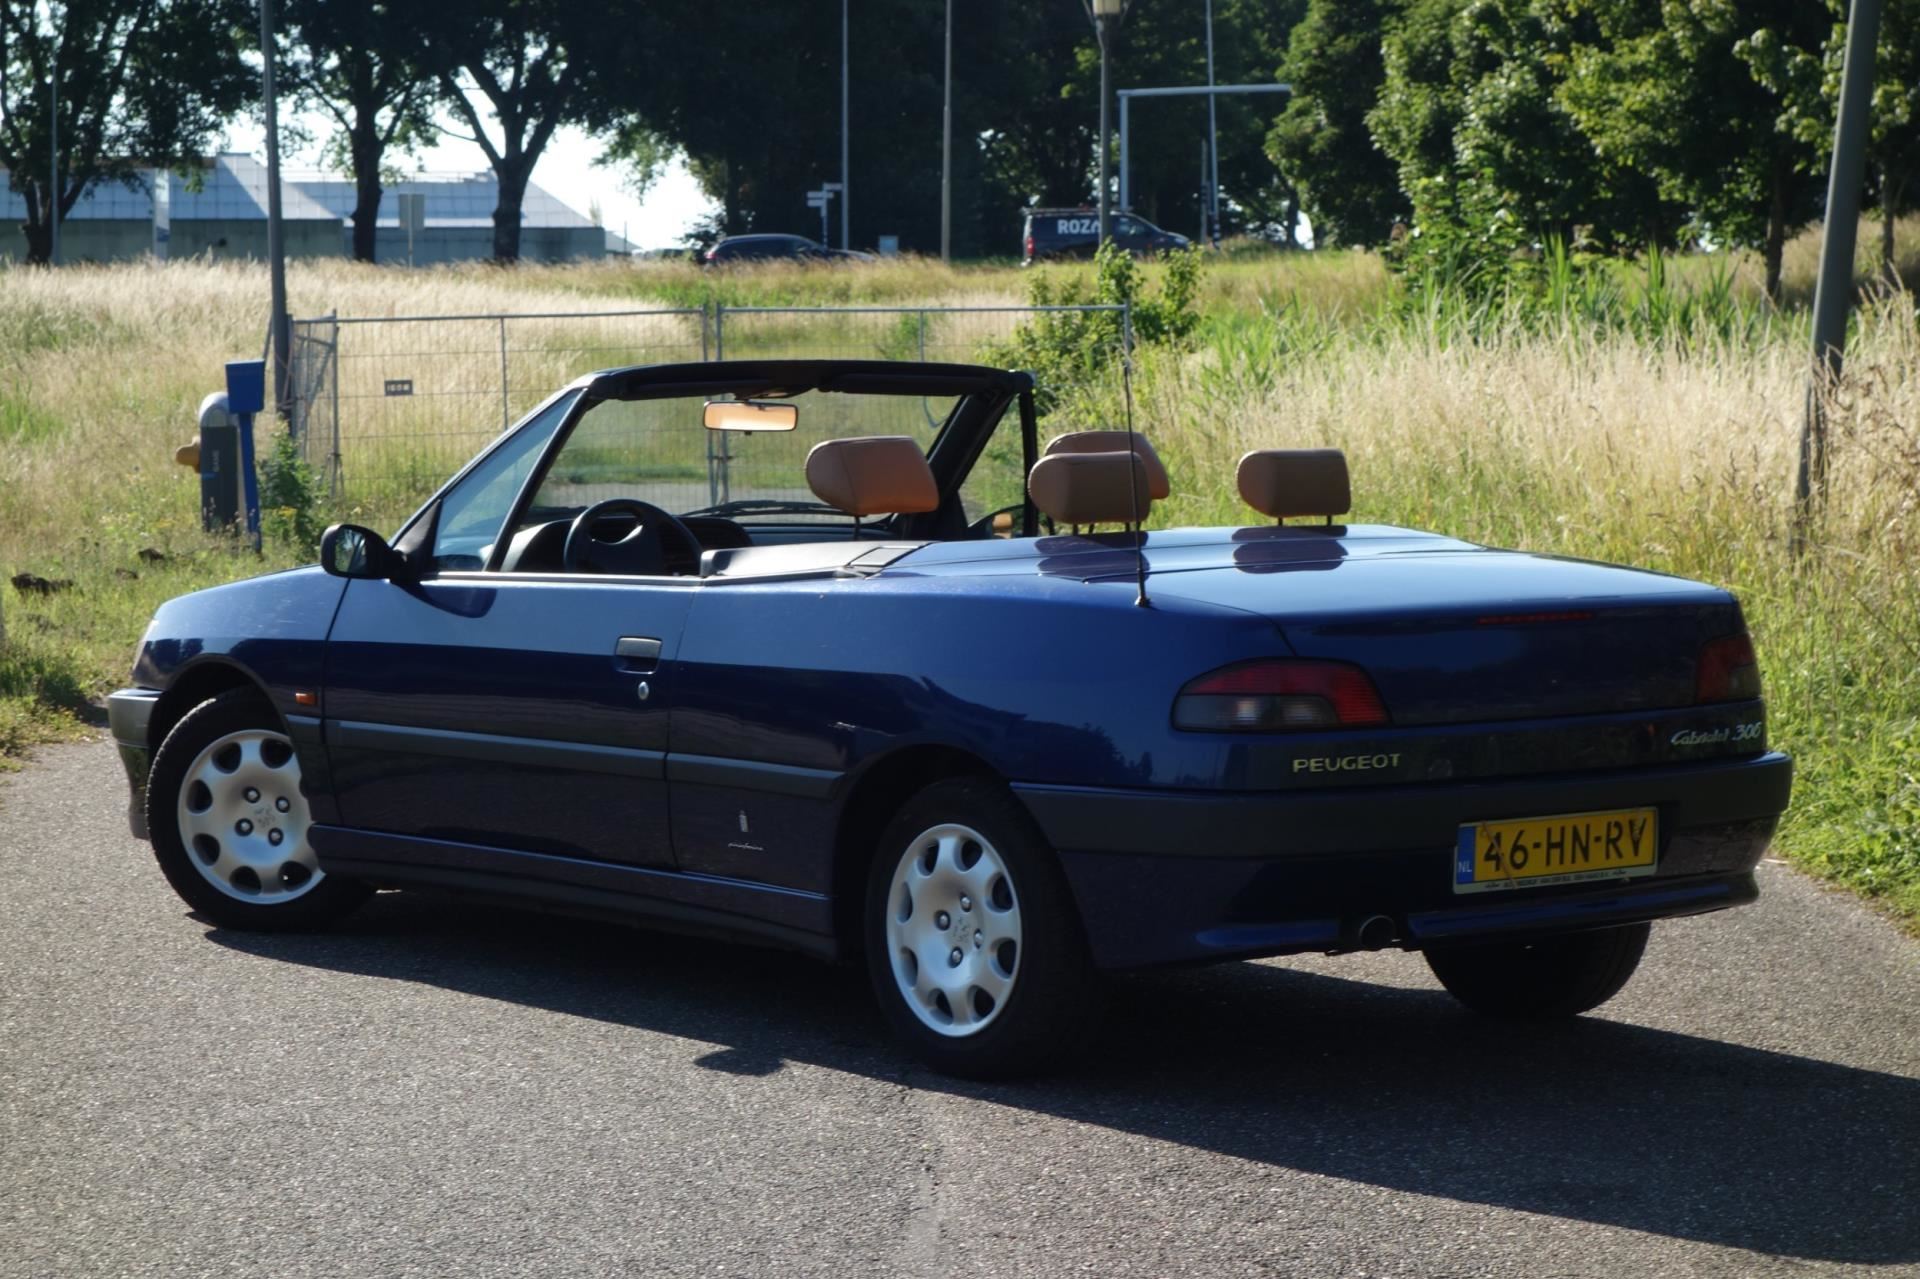 Il y a trente ans Peugeot dévoilait sa berline compacte, la 306